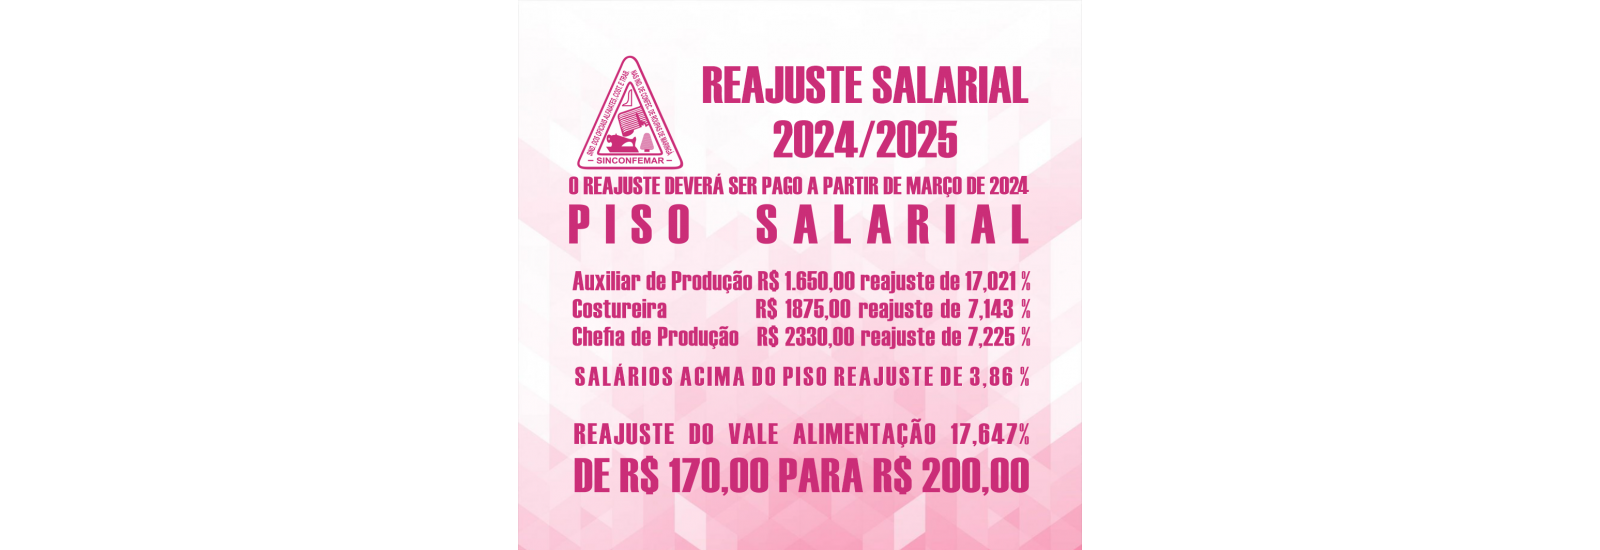 Reajuste Salarial 2024